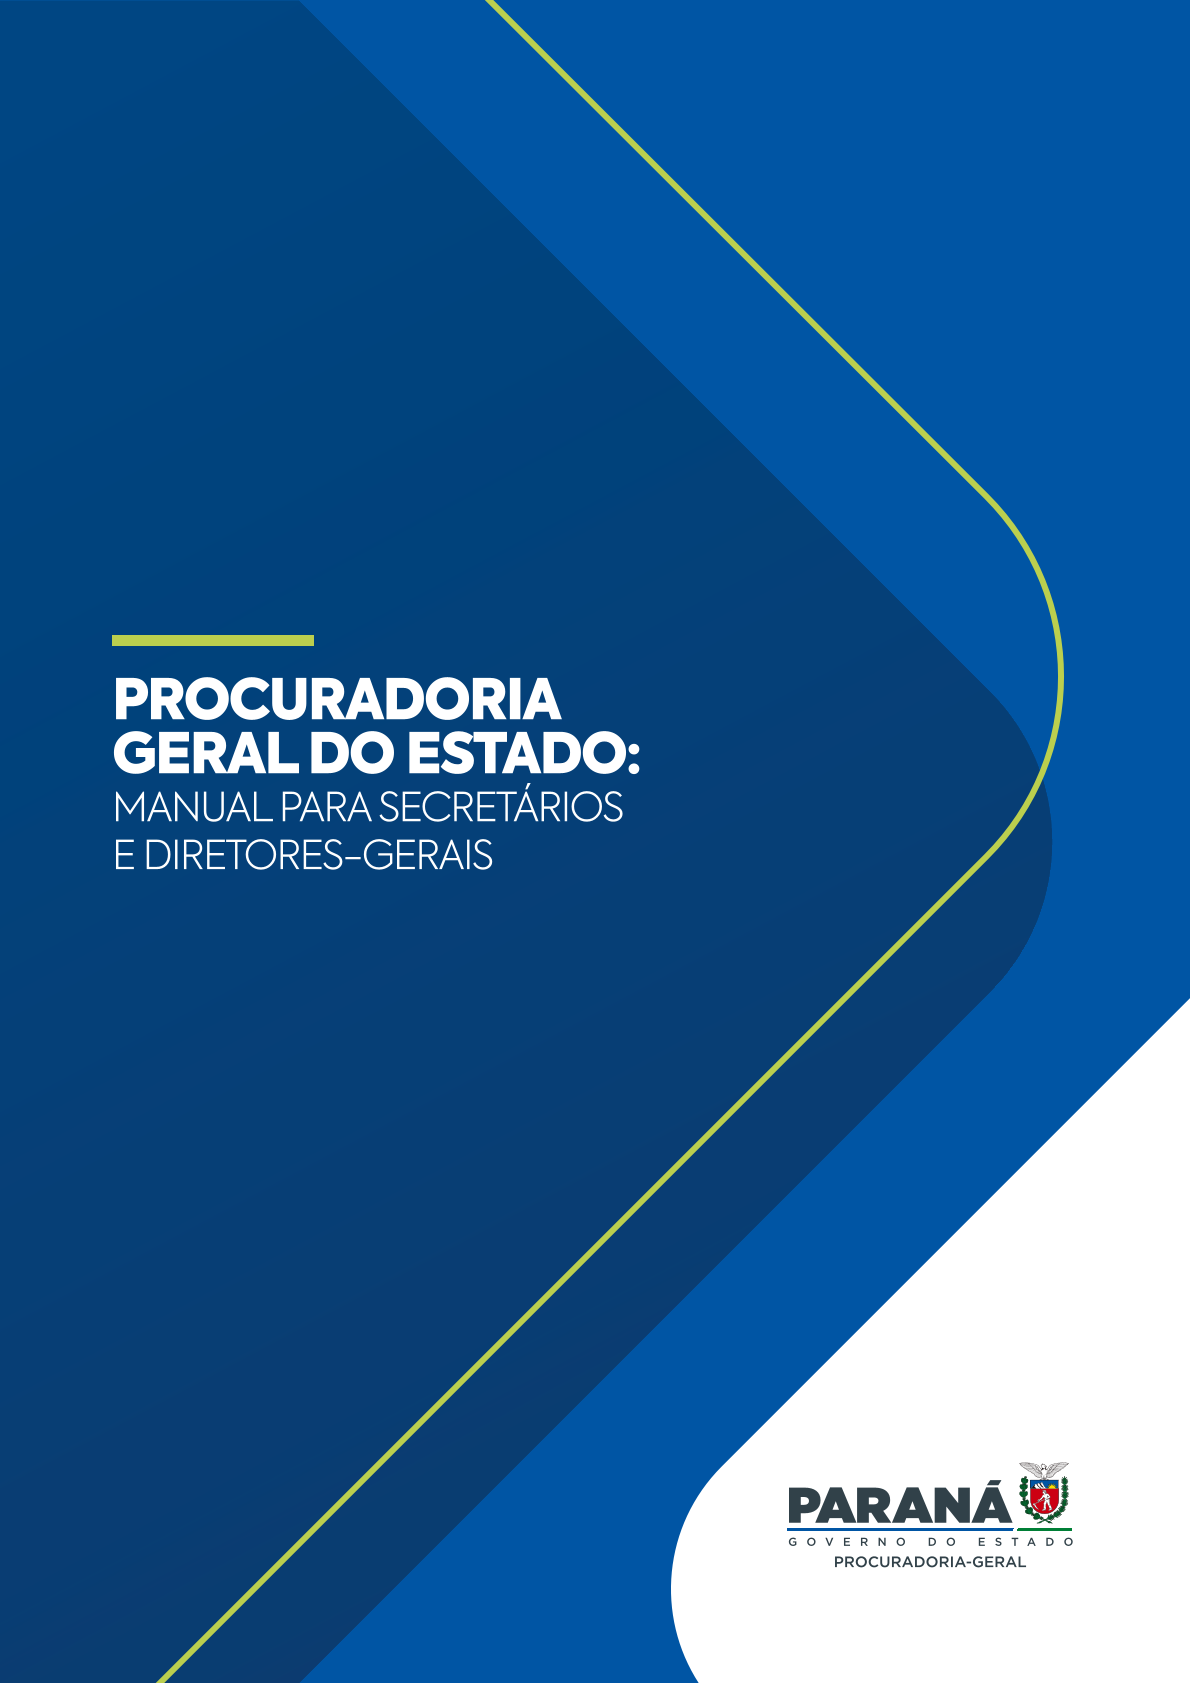 Capa Manual da PGE para Secretários e Diretores-Gerais